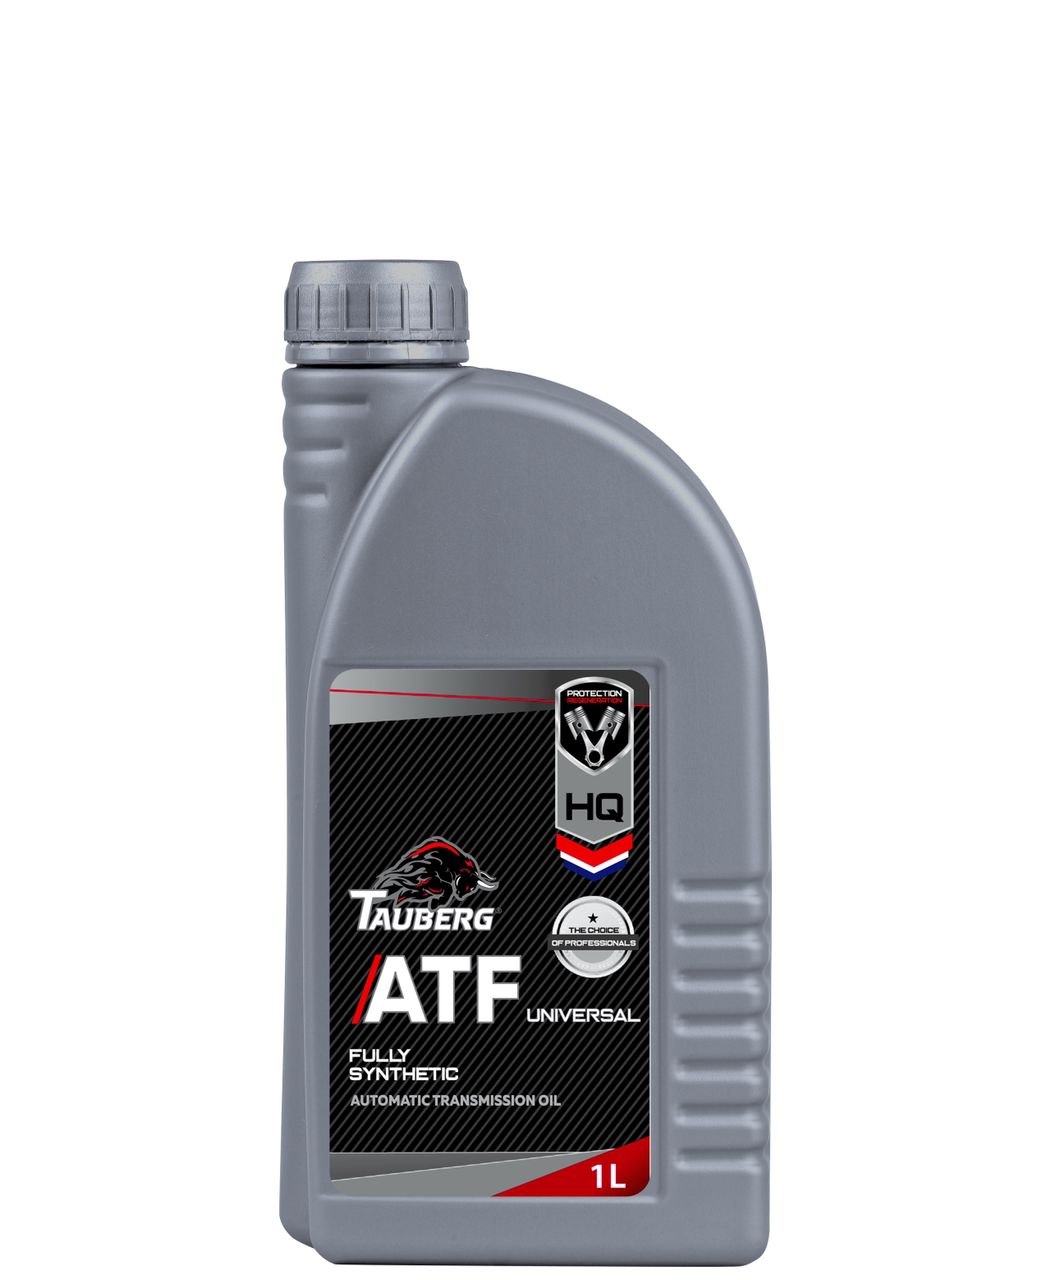 Универсальный атф. АТФ это универсальный. Tauberg ATF WS Automatic transmission Fluid масло трансмиссионное. NGN ATF Universal. Tauberg ATF Universal fully Synthetic допуски.